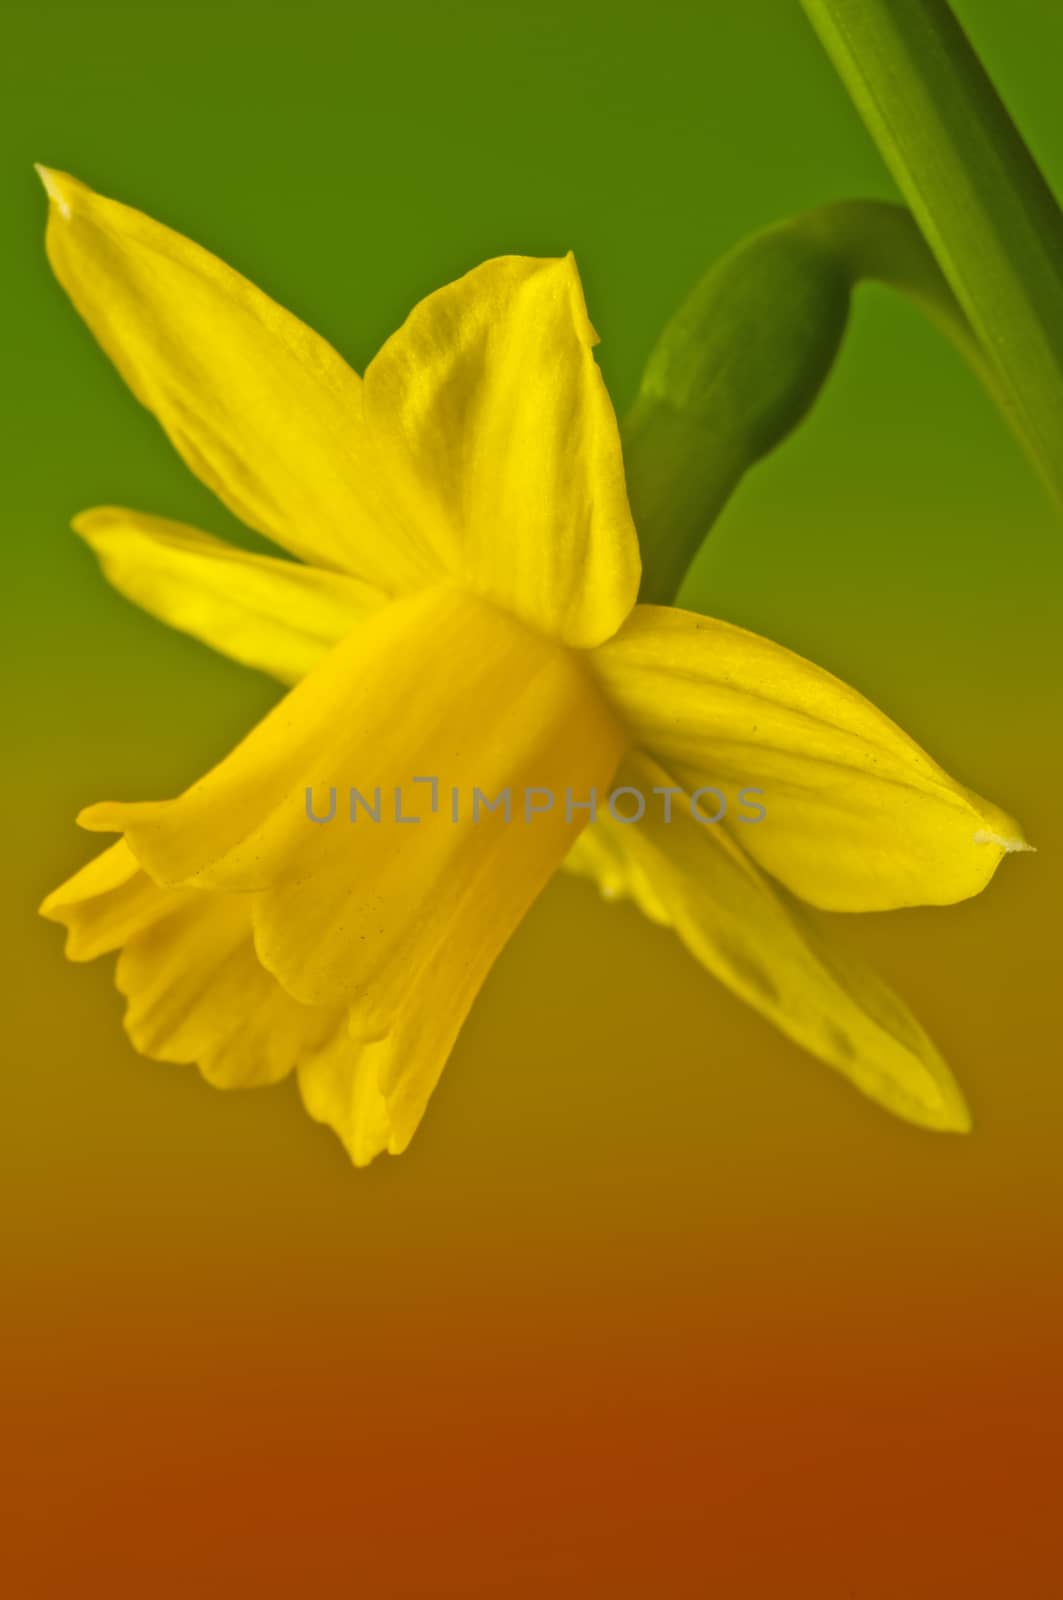 daffodil blooming